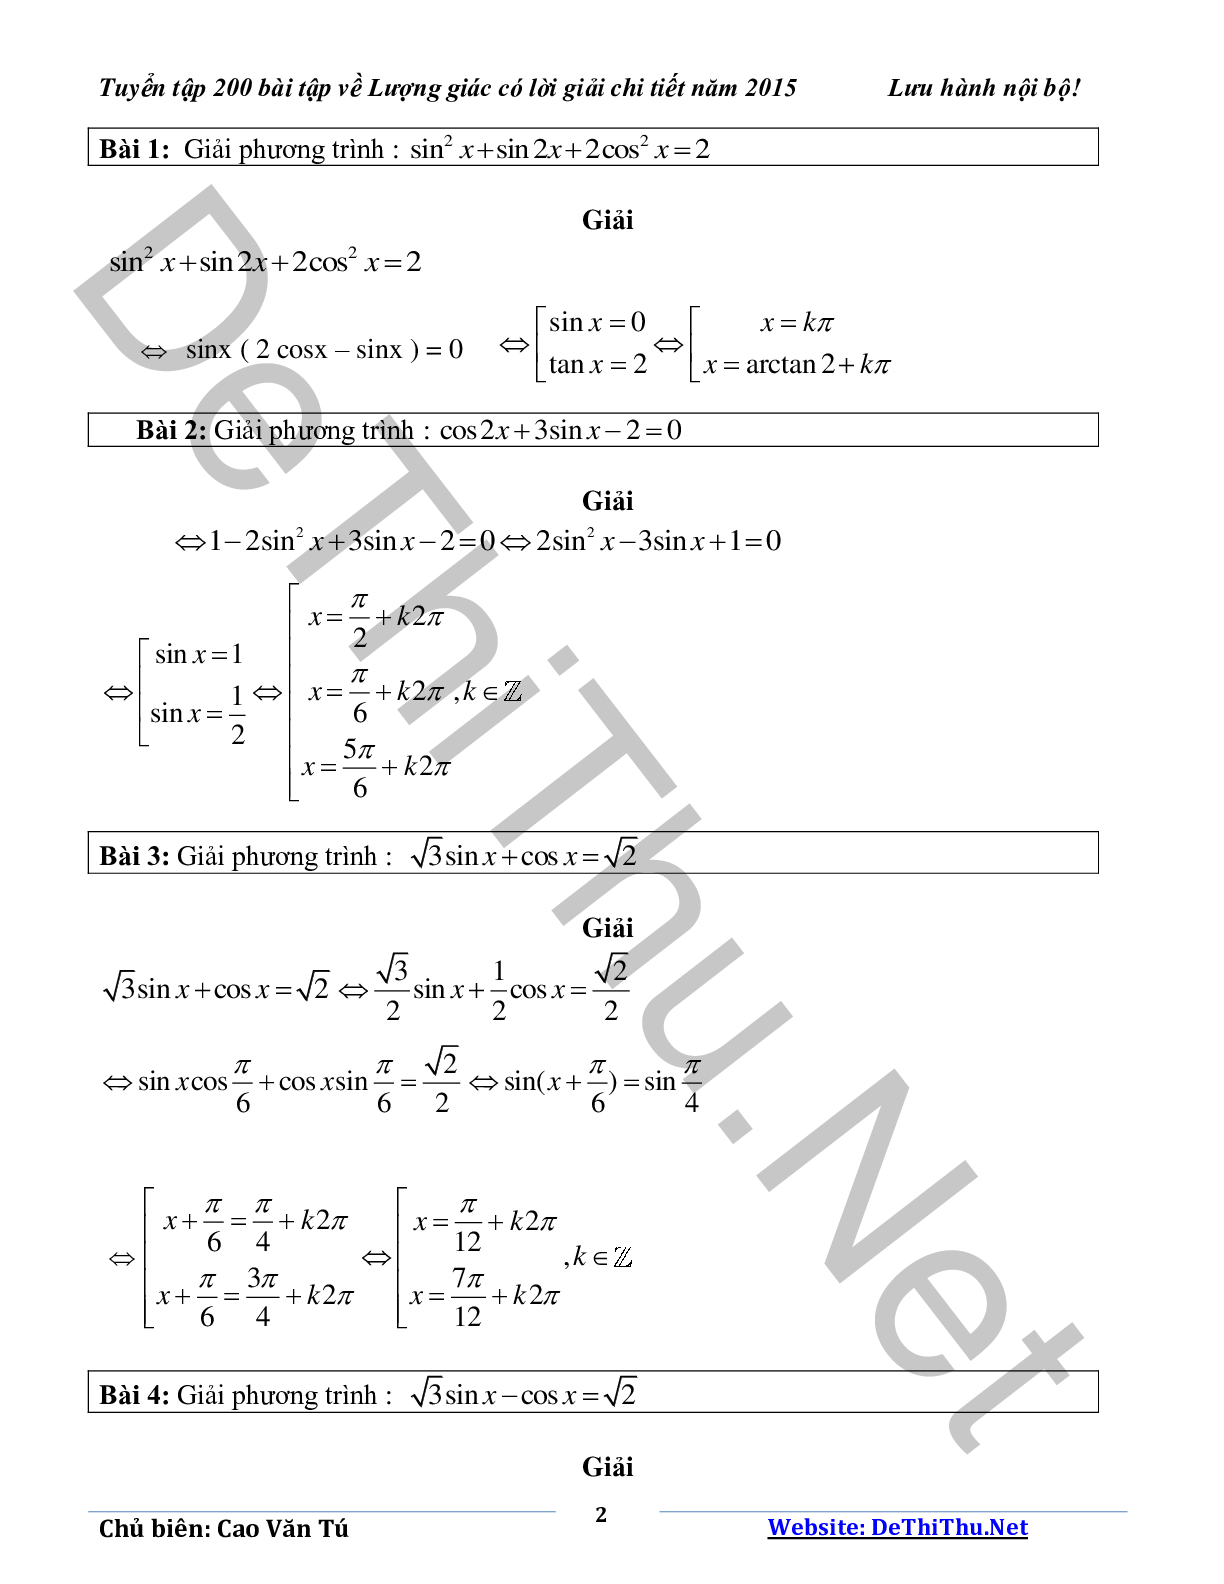 Tuyển tập 200 bài tập lượng giác có lời giải chi tiết năm 2015 (trang 2)